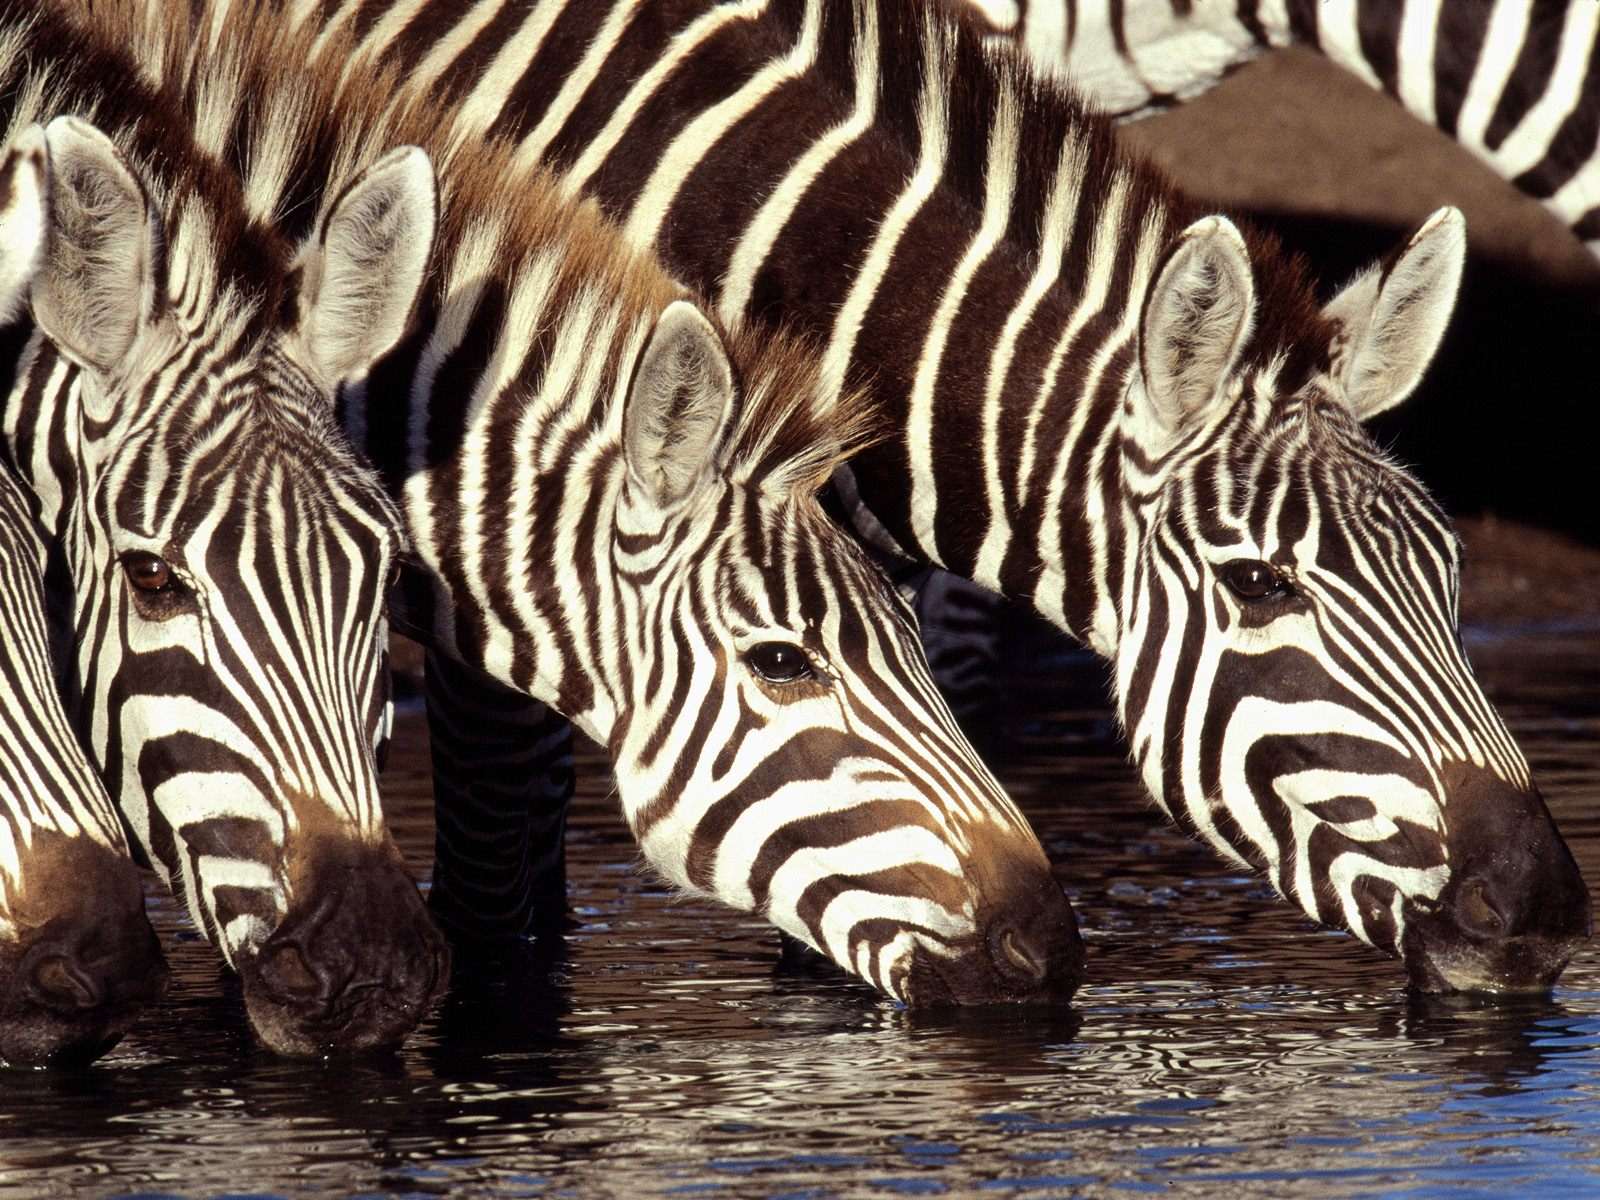 Зебры пьют воду, фото обои, фотография картинка